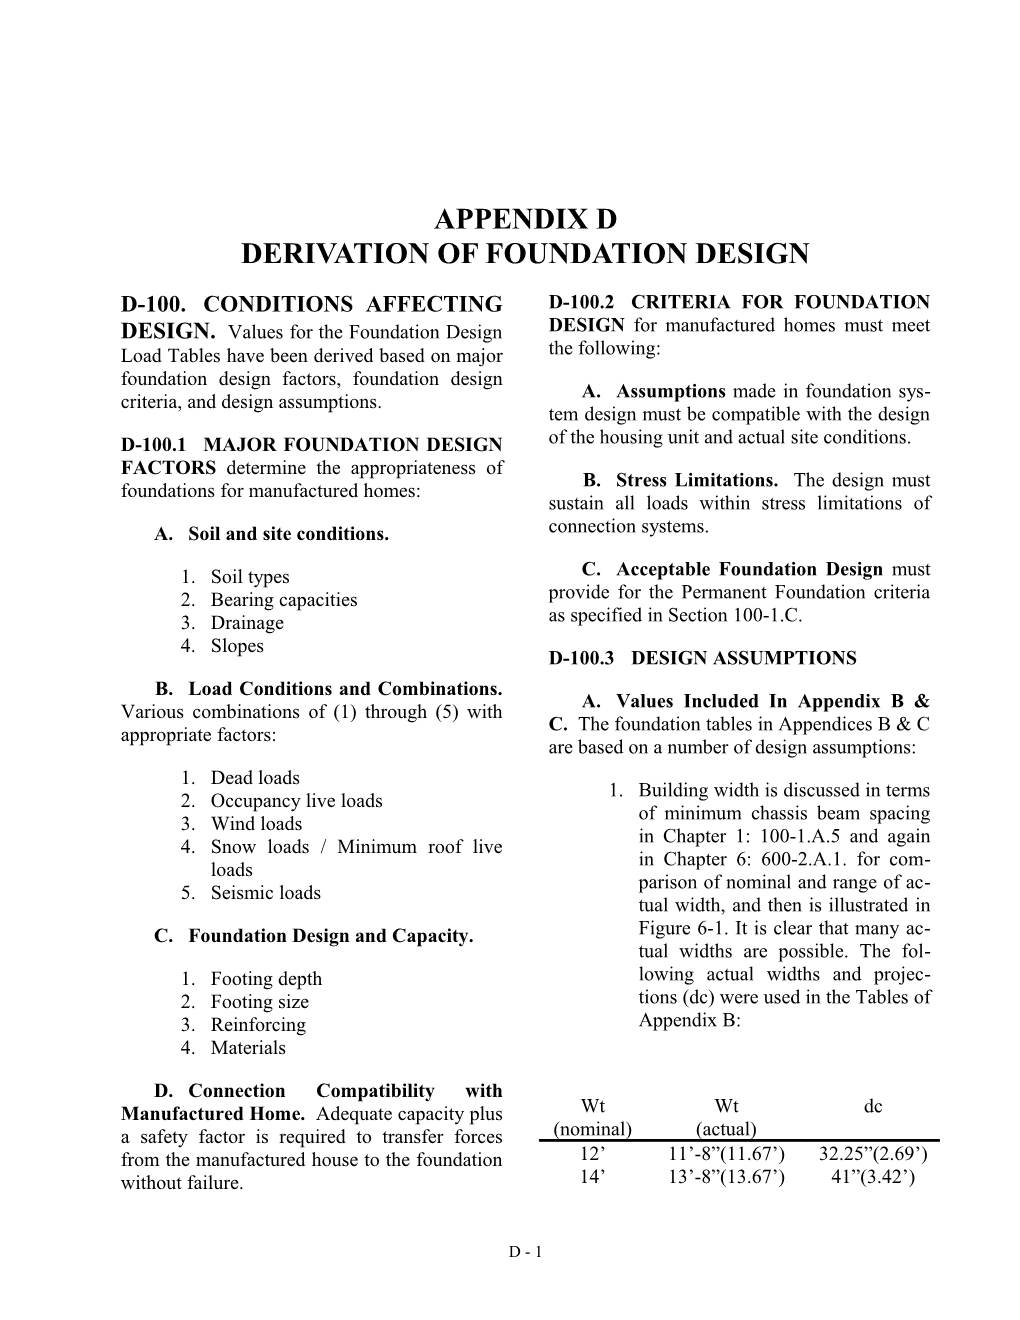 Appendix D Derivation of Foundation Design